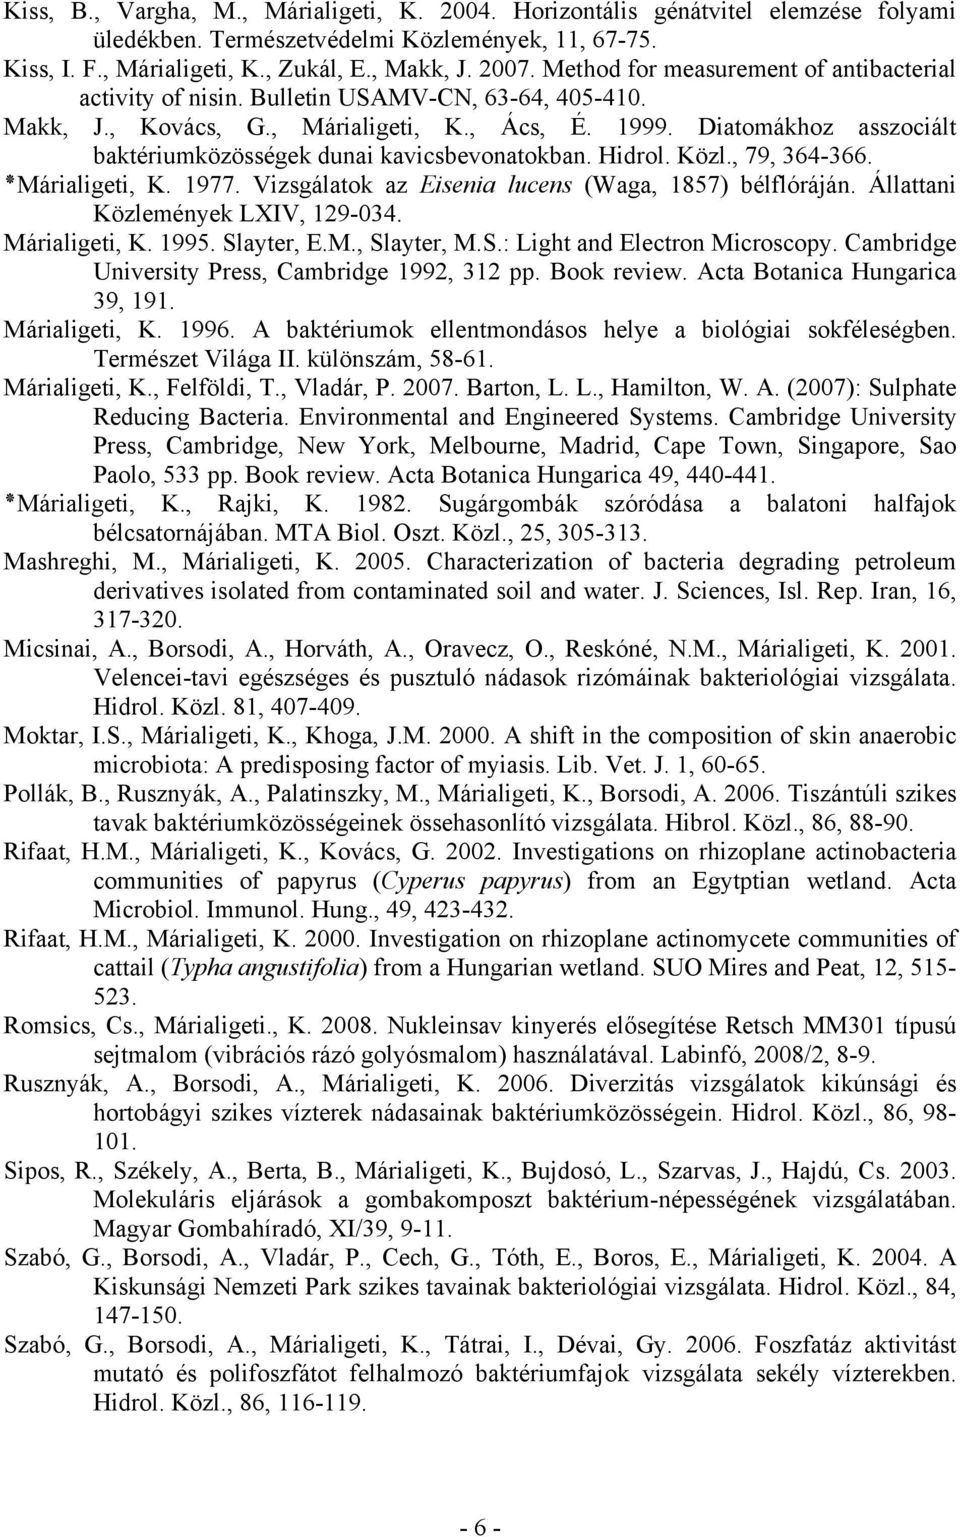 Diatomákhoz asszociált baktériumközösségek dunai kavicsbevonatokban. Hidrol. Közl., 79, 364-366., Márialigeti K. 1977. Vizsgálatok az Eisenia lucens (Waga, 1857) bélflóráján.